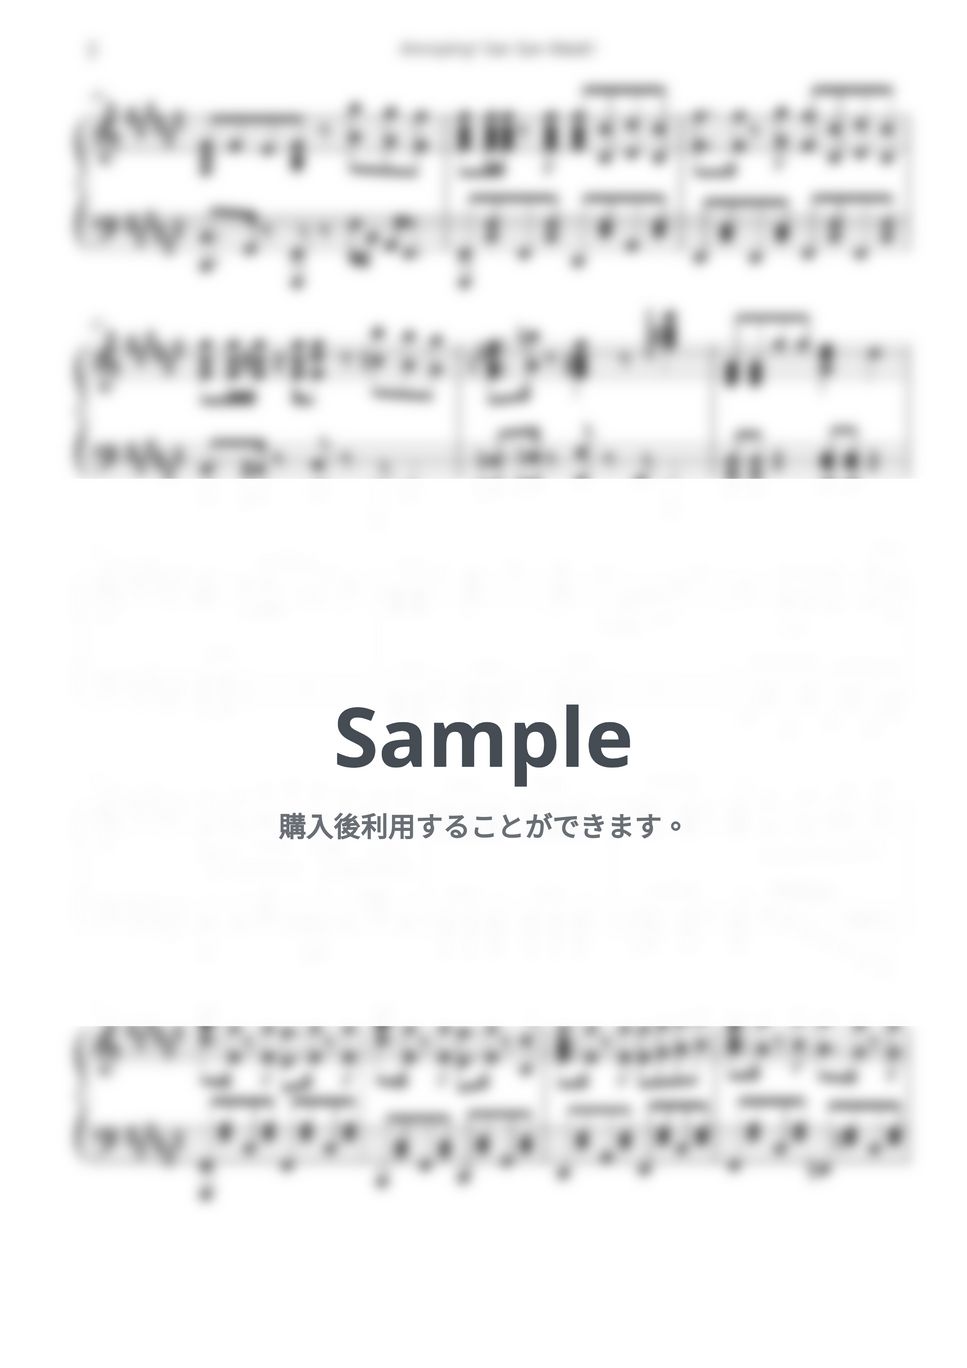 先輩がうざい後輩の話 OST - アノーイングさんさんウィーク by 자유로운 공간 Free Space / Anime Piano Covers